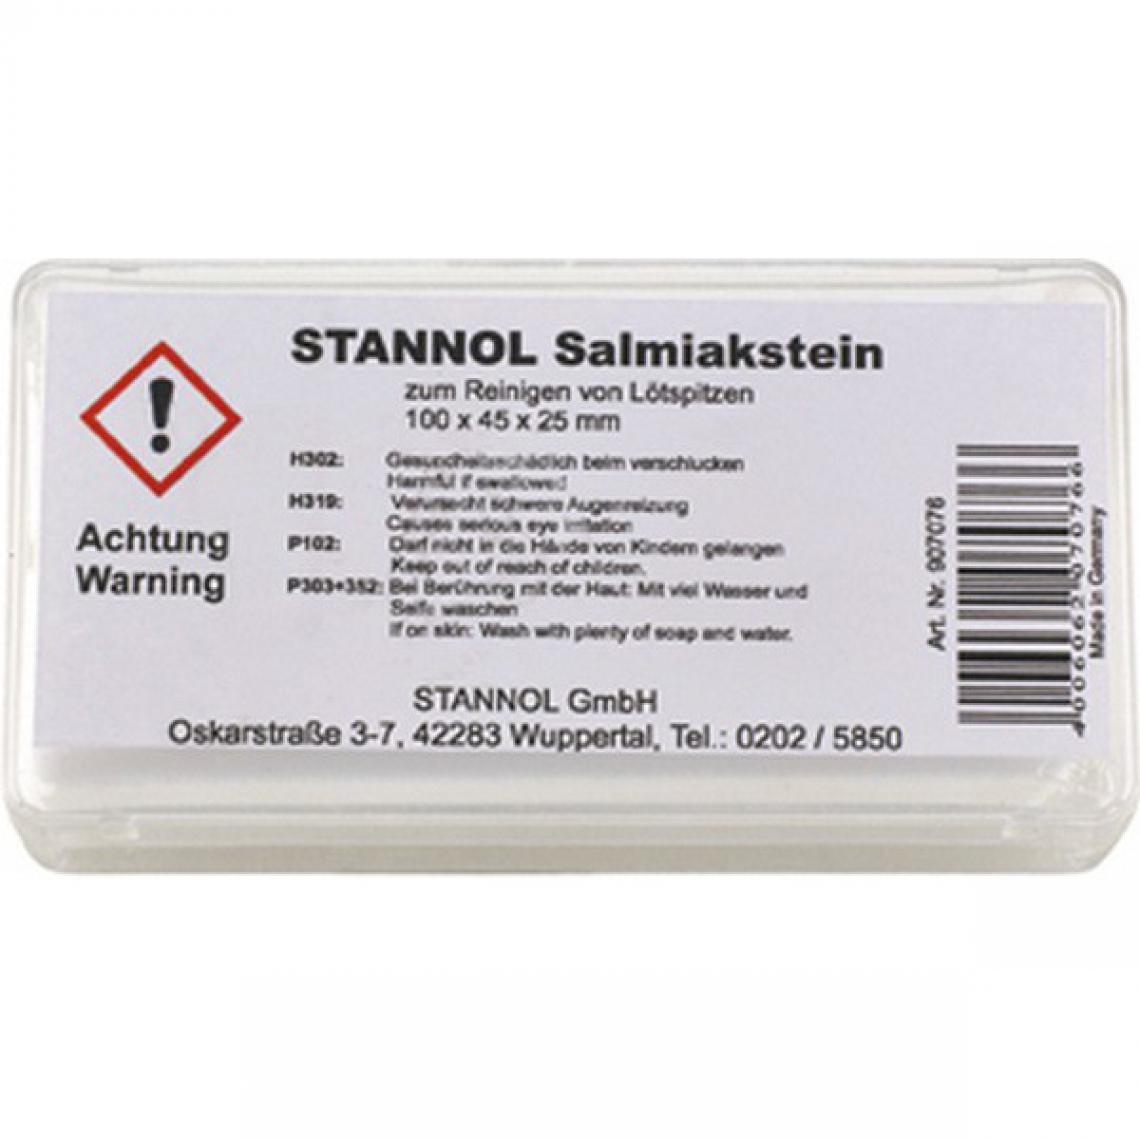 Stannol - Pierre à décaper ammoniaque n°907076 en boîte Stannol 1 PCS - Accessoires ponçage